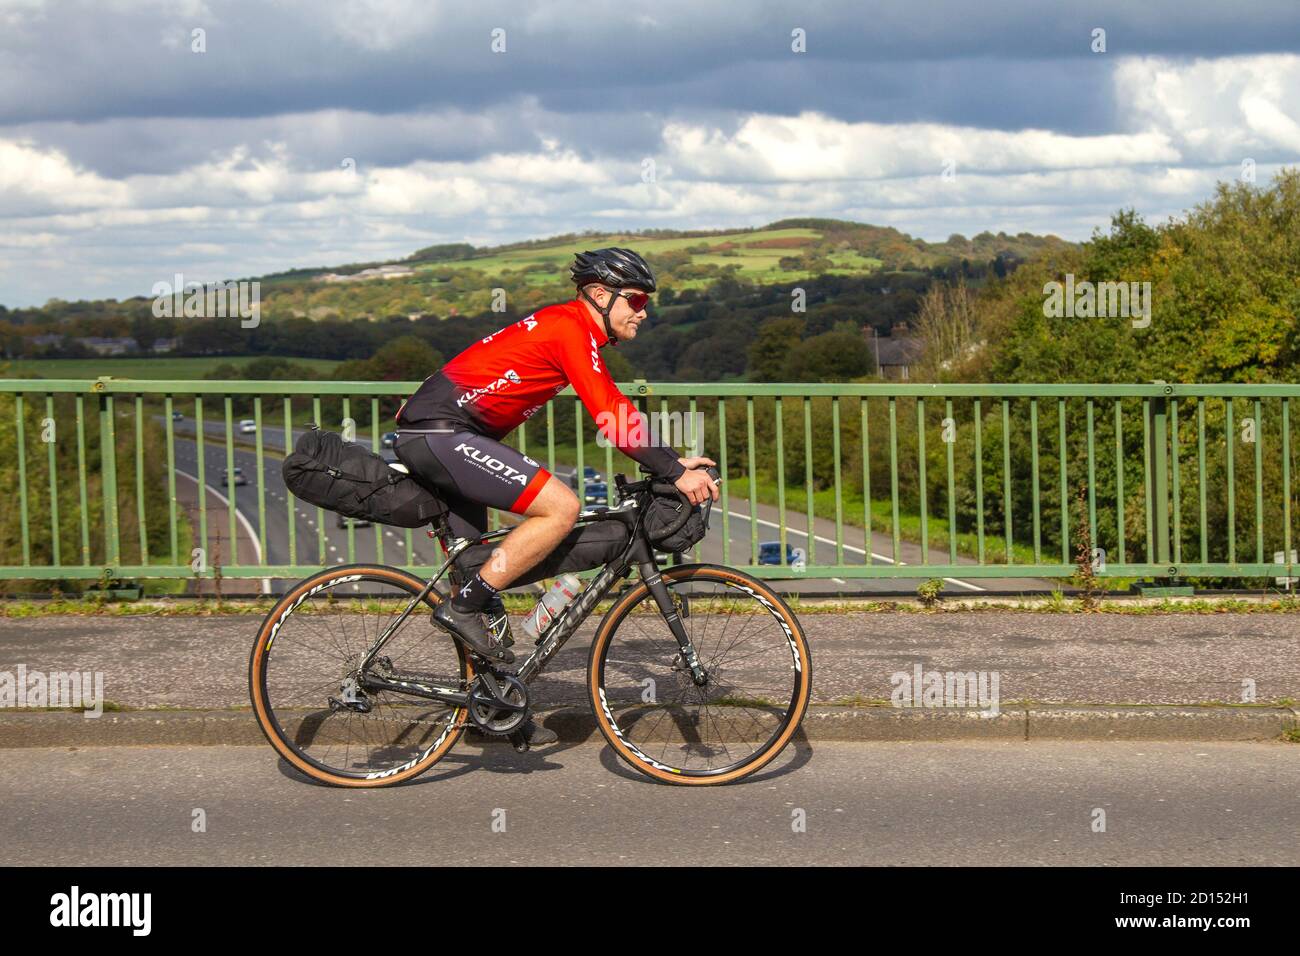 Männlicher Radfahrer Reiten Kuota Sport Carbon Rennrad auf dem Land Route  überqueren Autobahnbrücke im ländlichen Lancashire, Großbritannien  Stockfotografie - Alamy